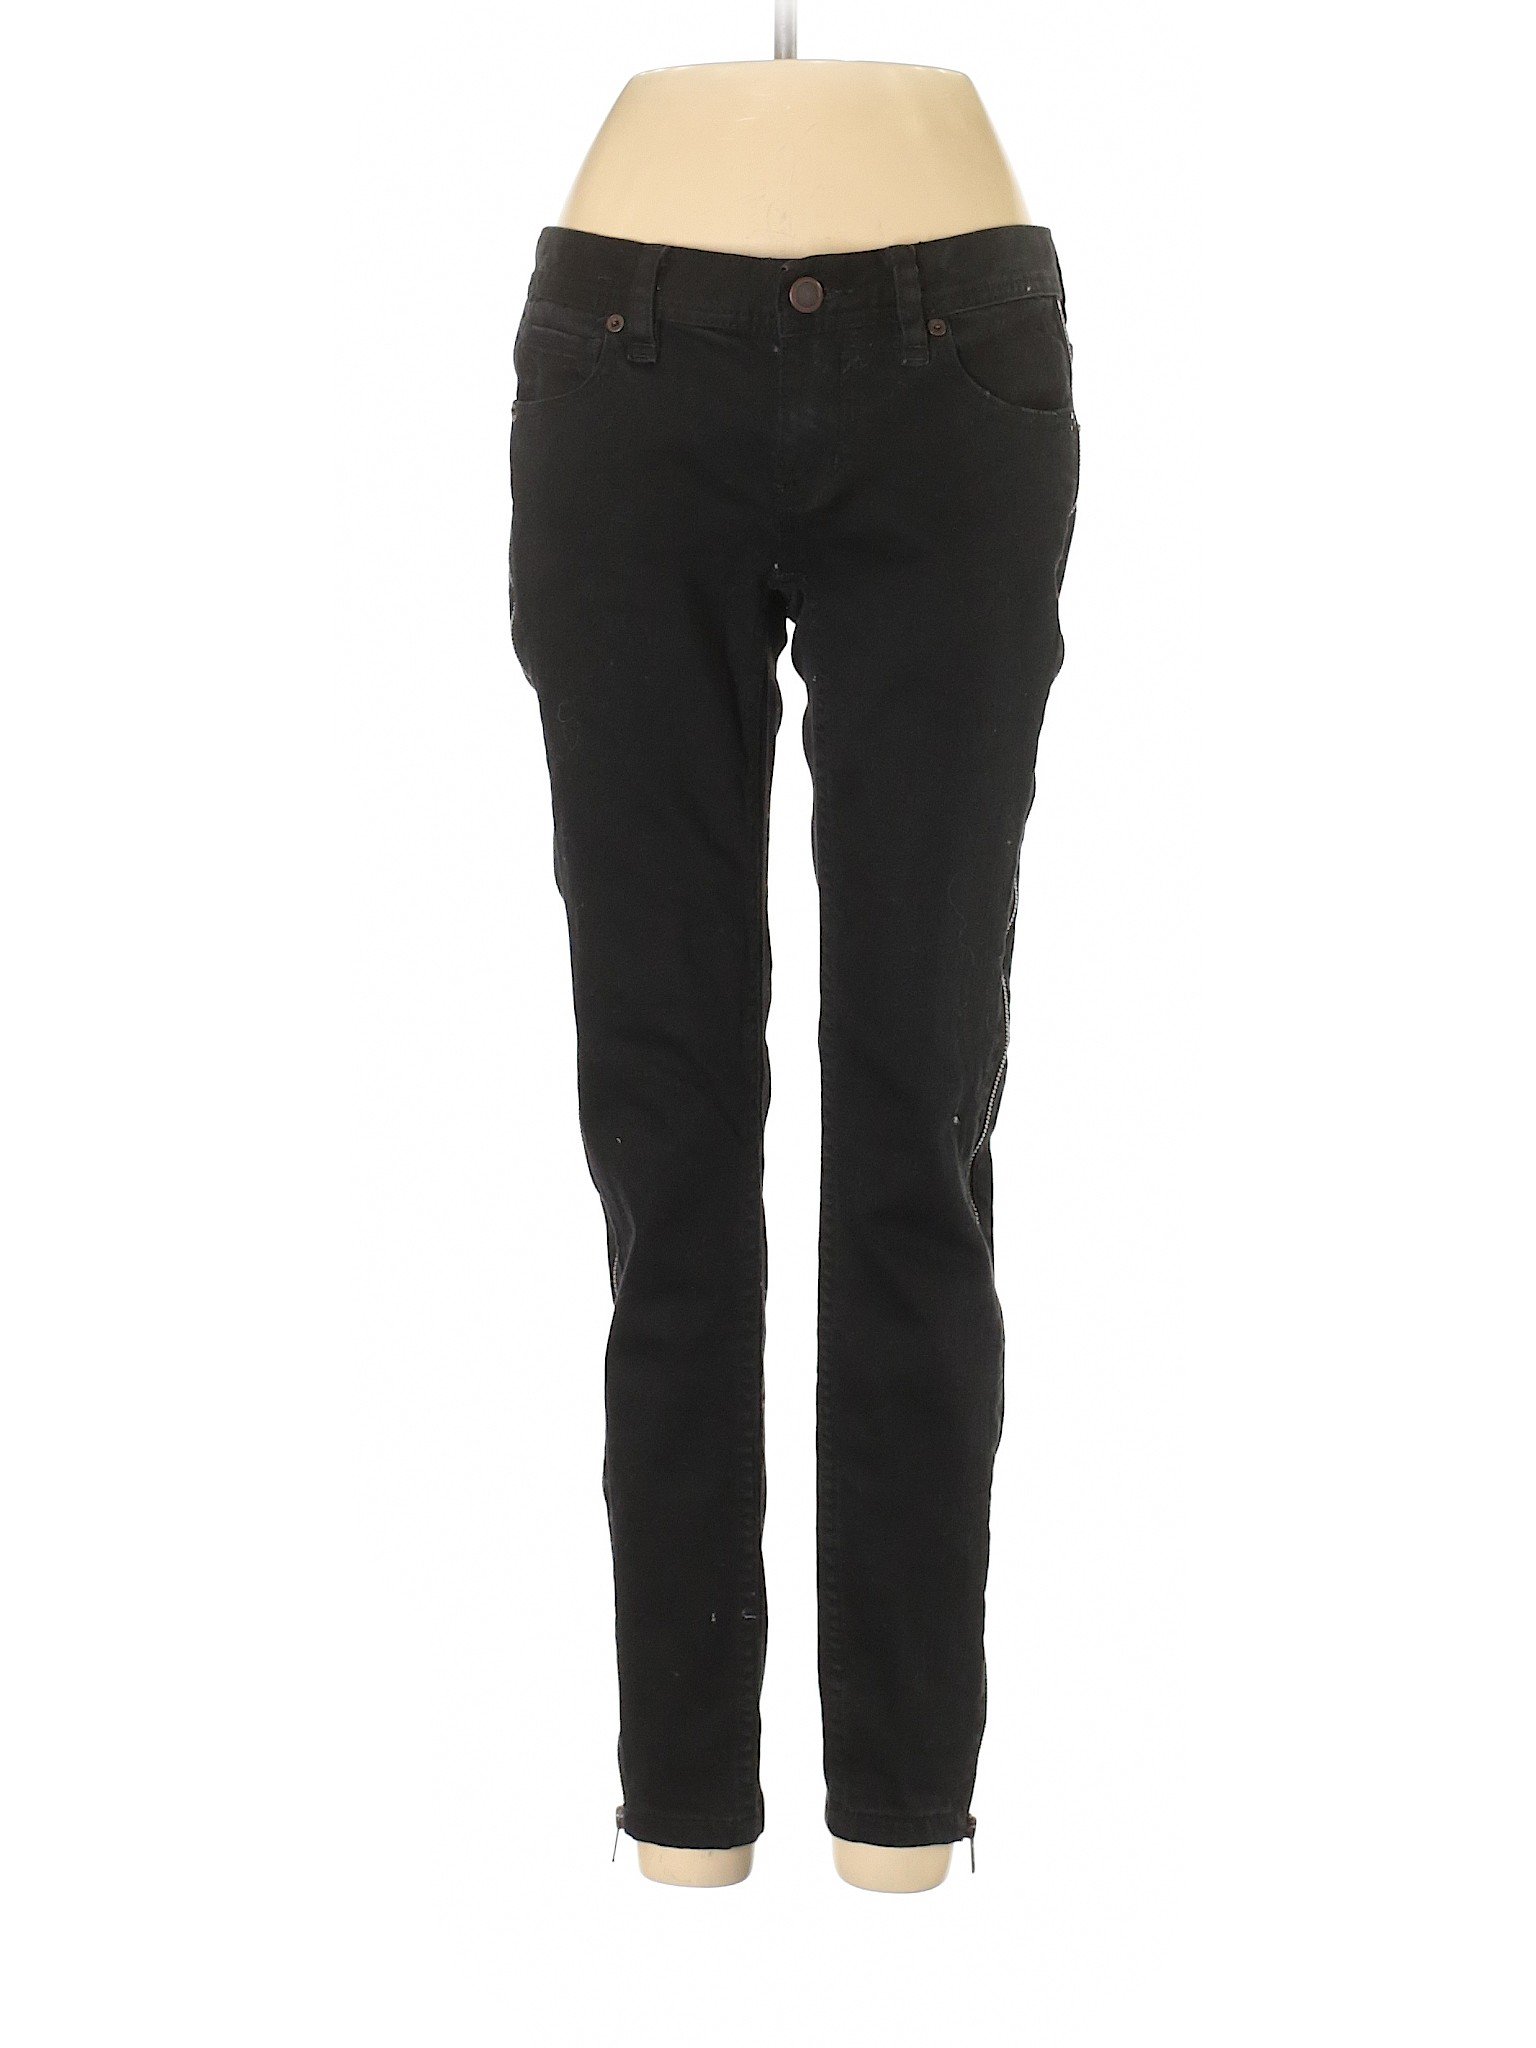 Free People Women Black Jeans 25W | eBay